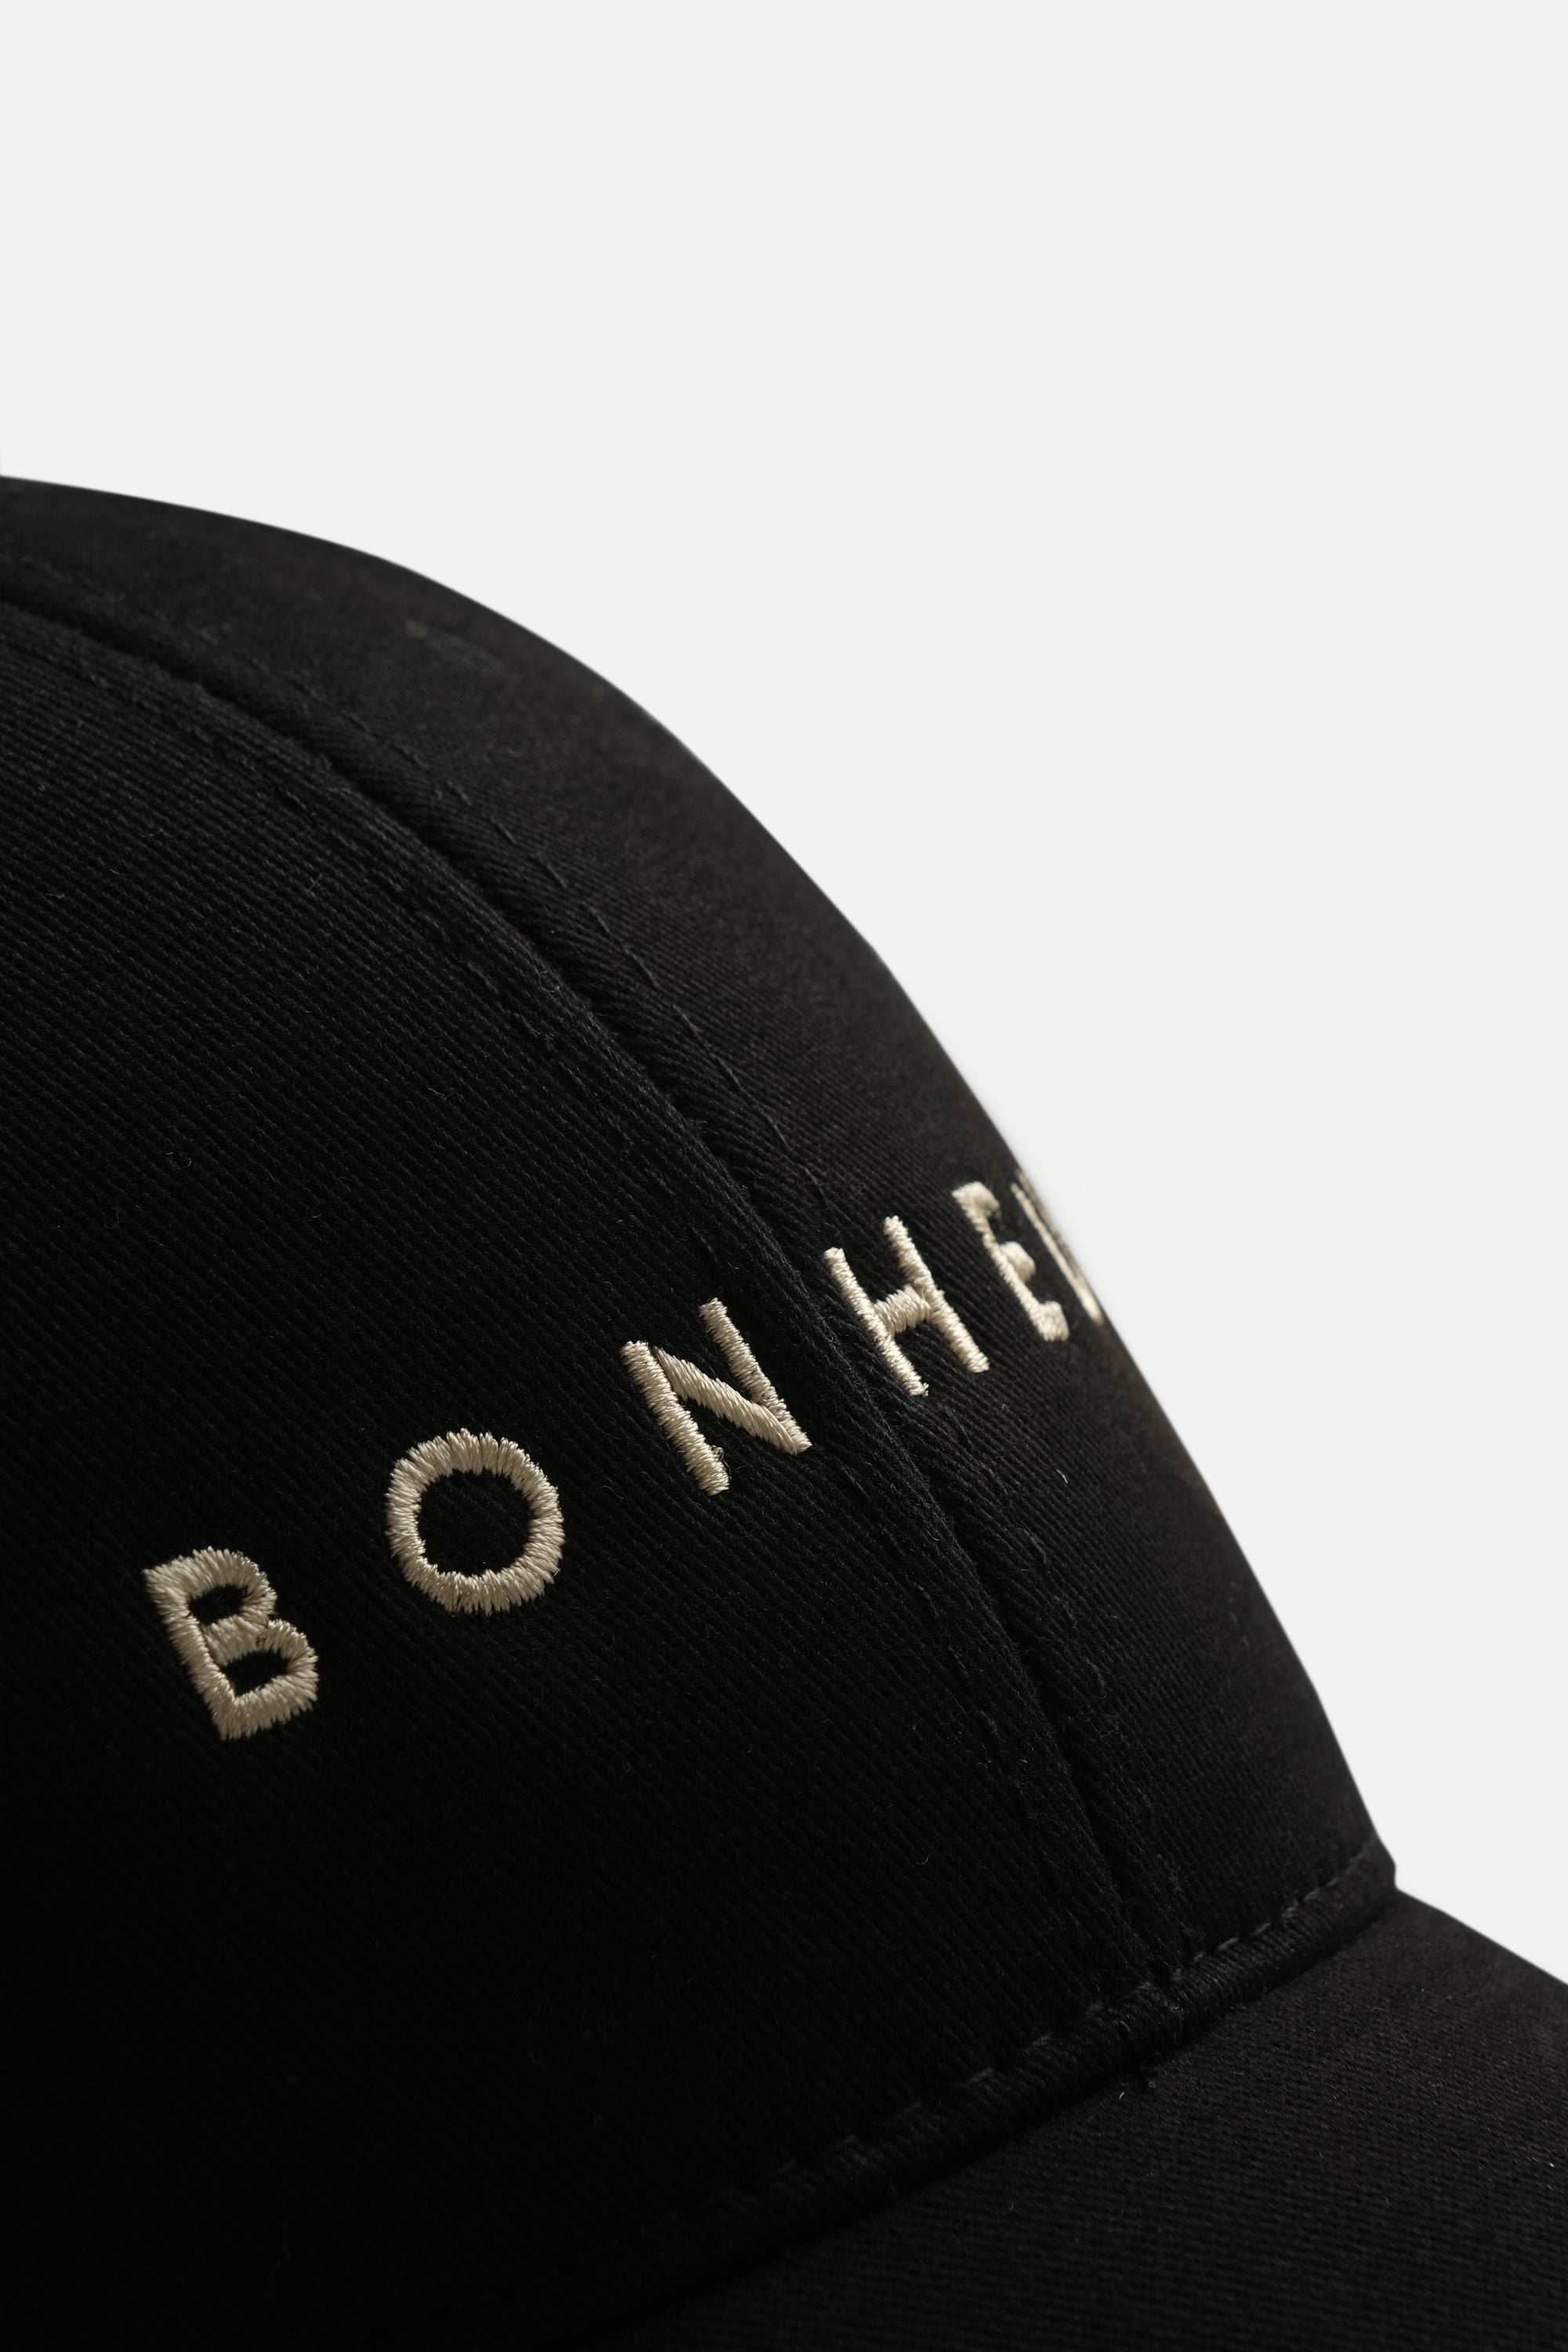 Bonheur Beyzbol Şapkası